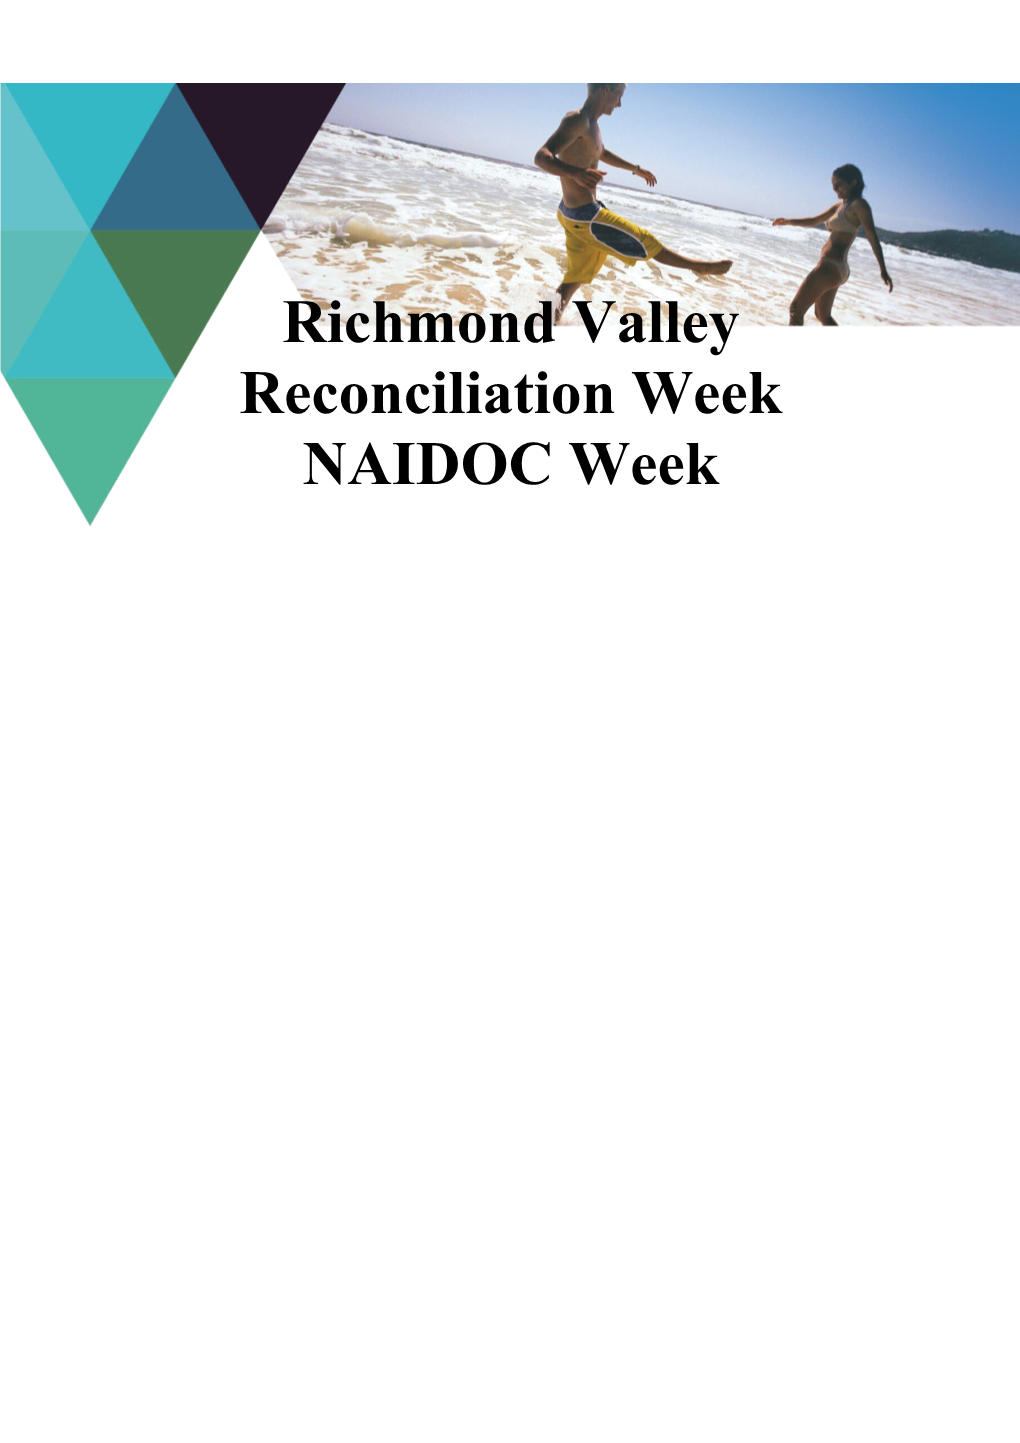 Richmond Valley Reconciliation Week